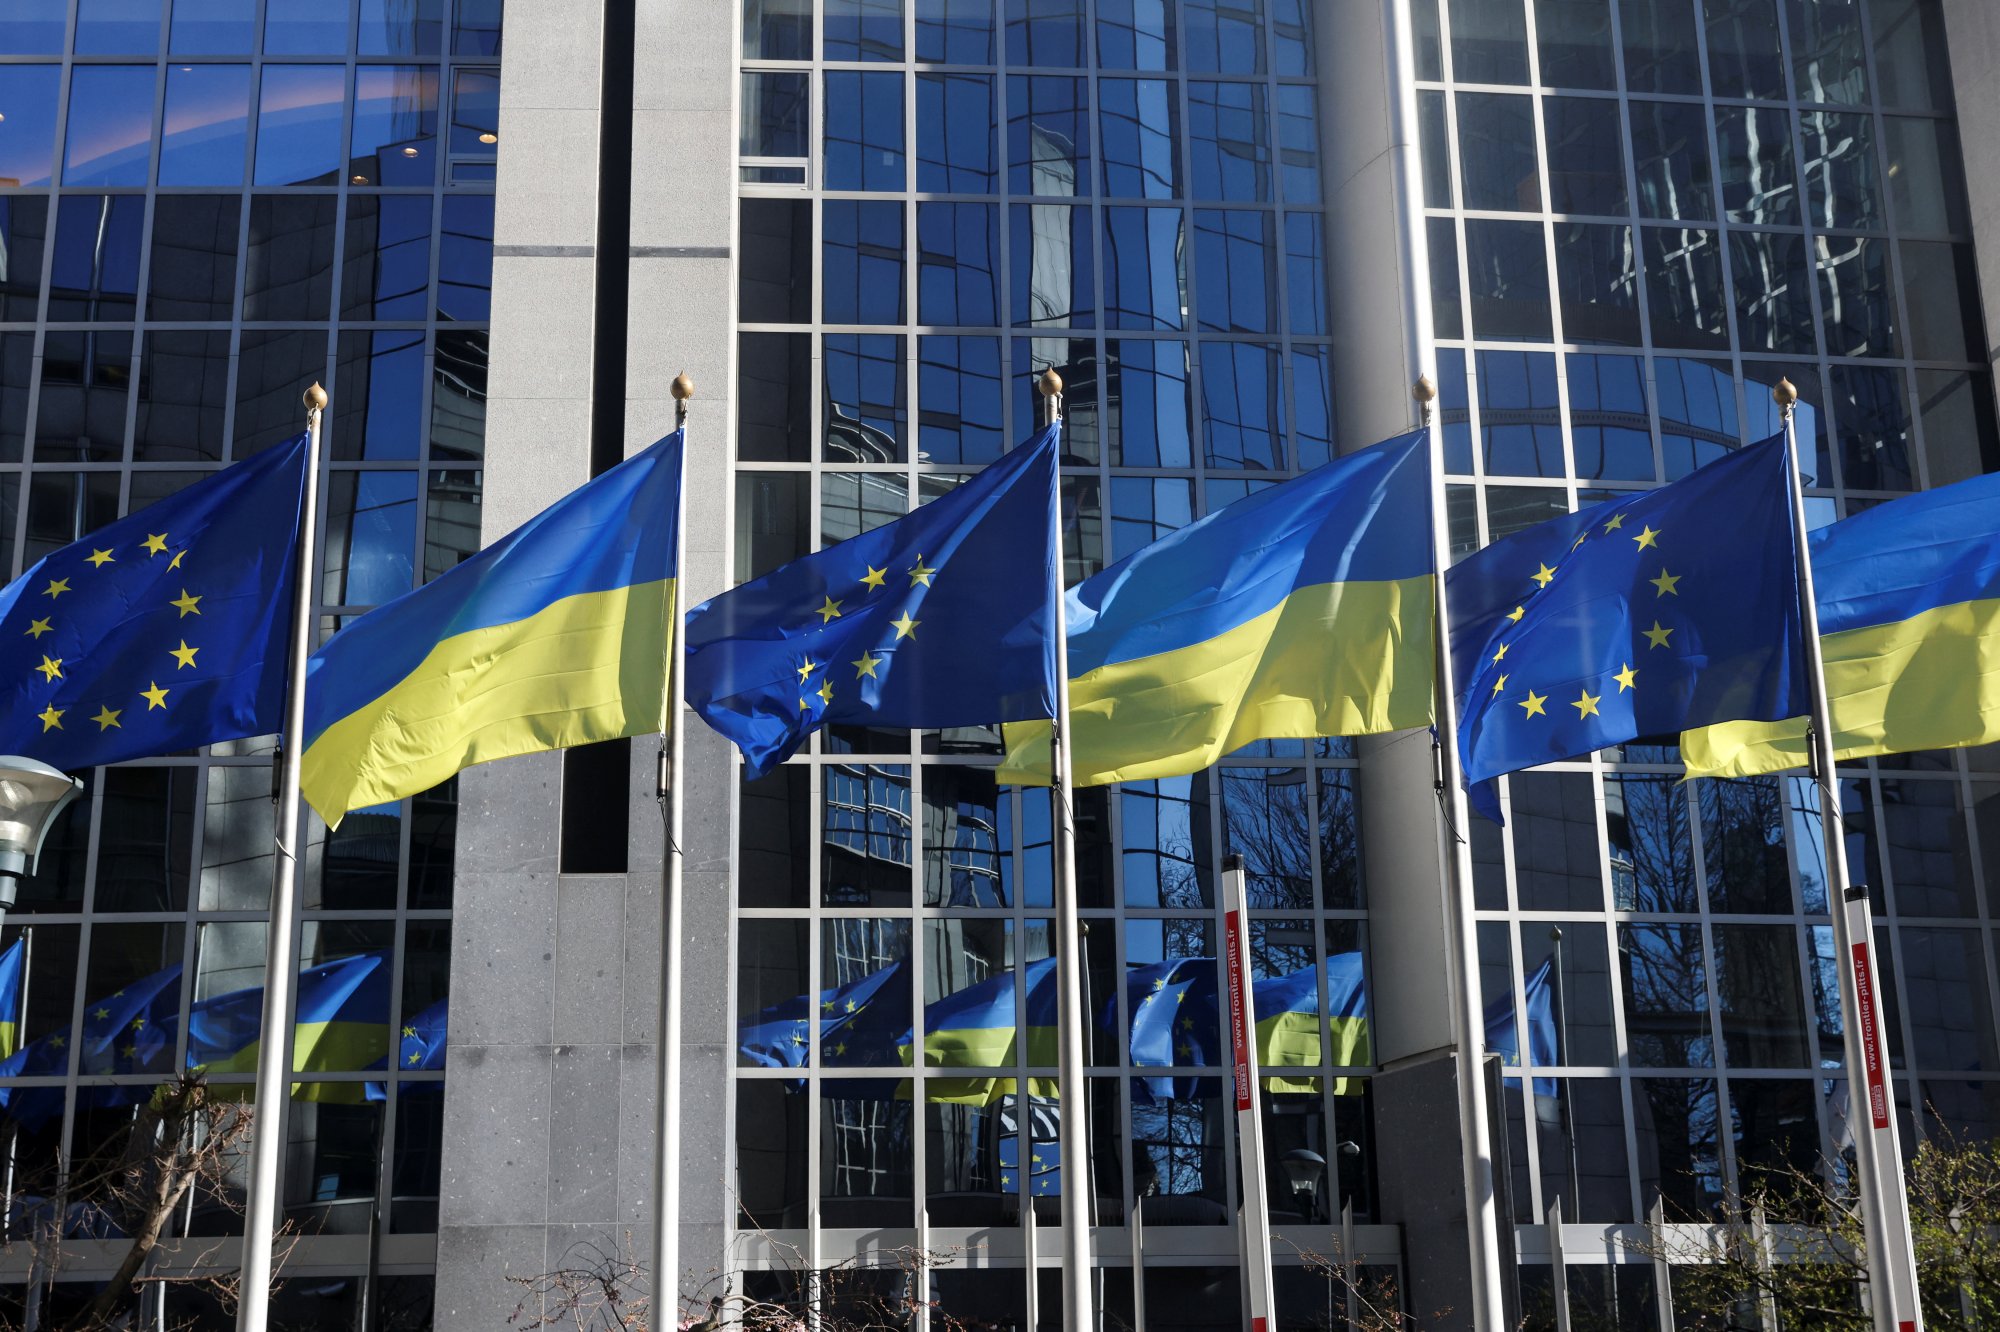 Ουκρανία: Σχέδιο χρηματοδότησης 20 δισ. ευρώ από την ΕΕ με παράκαμψη του ουγγρικού βέτο